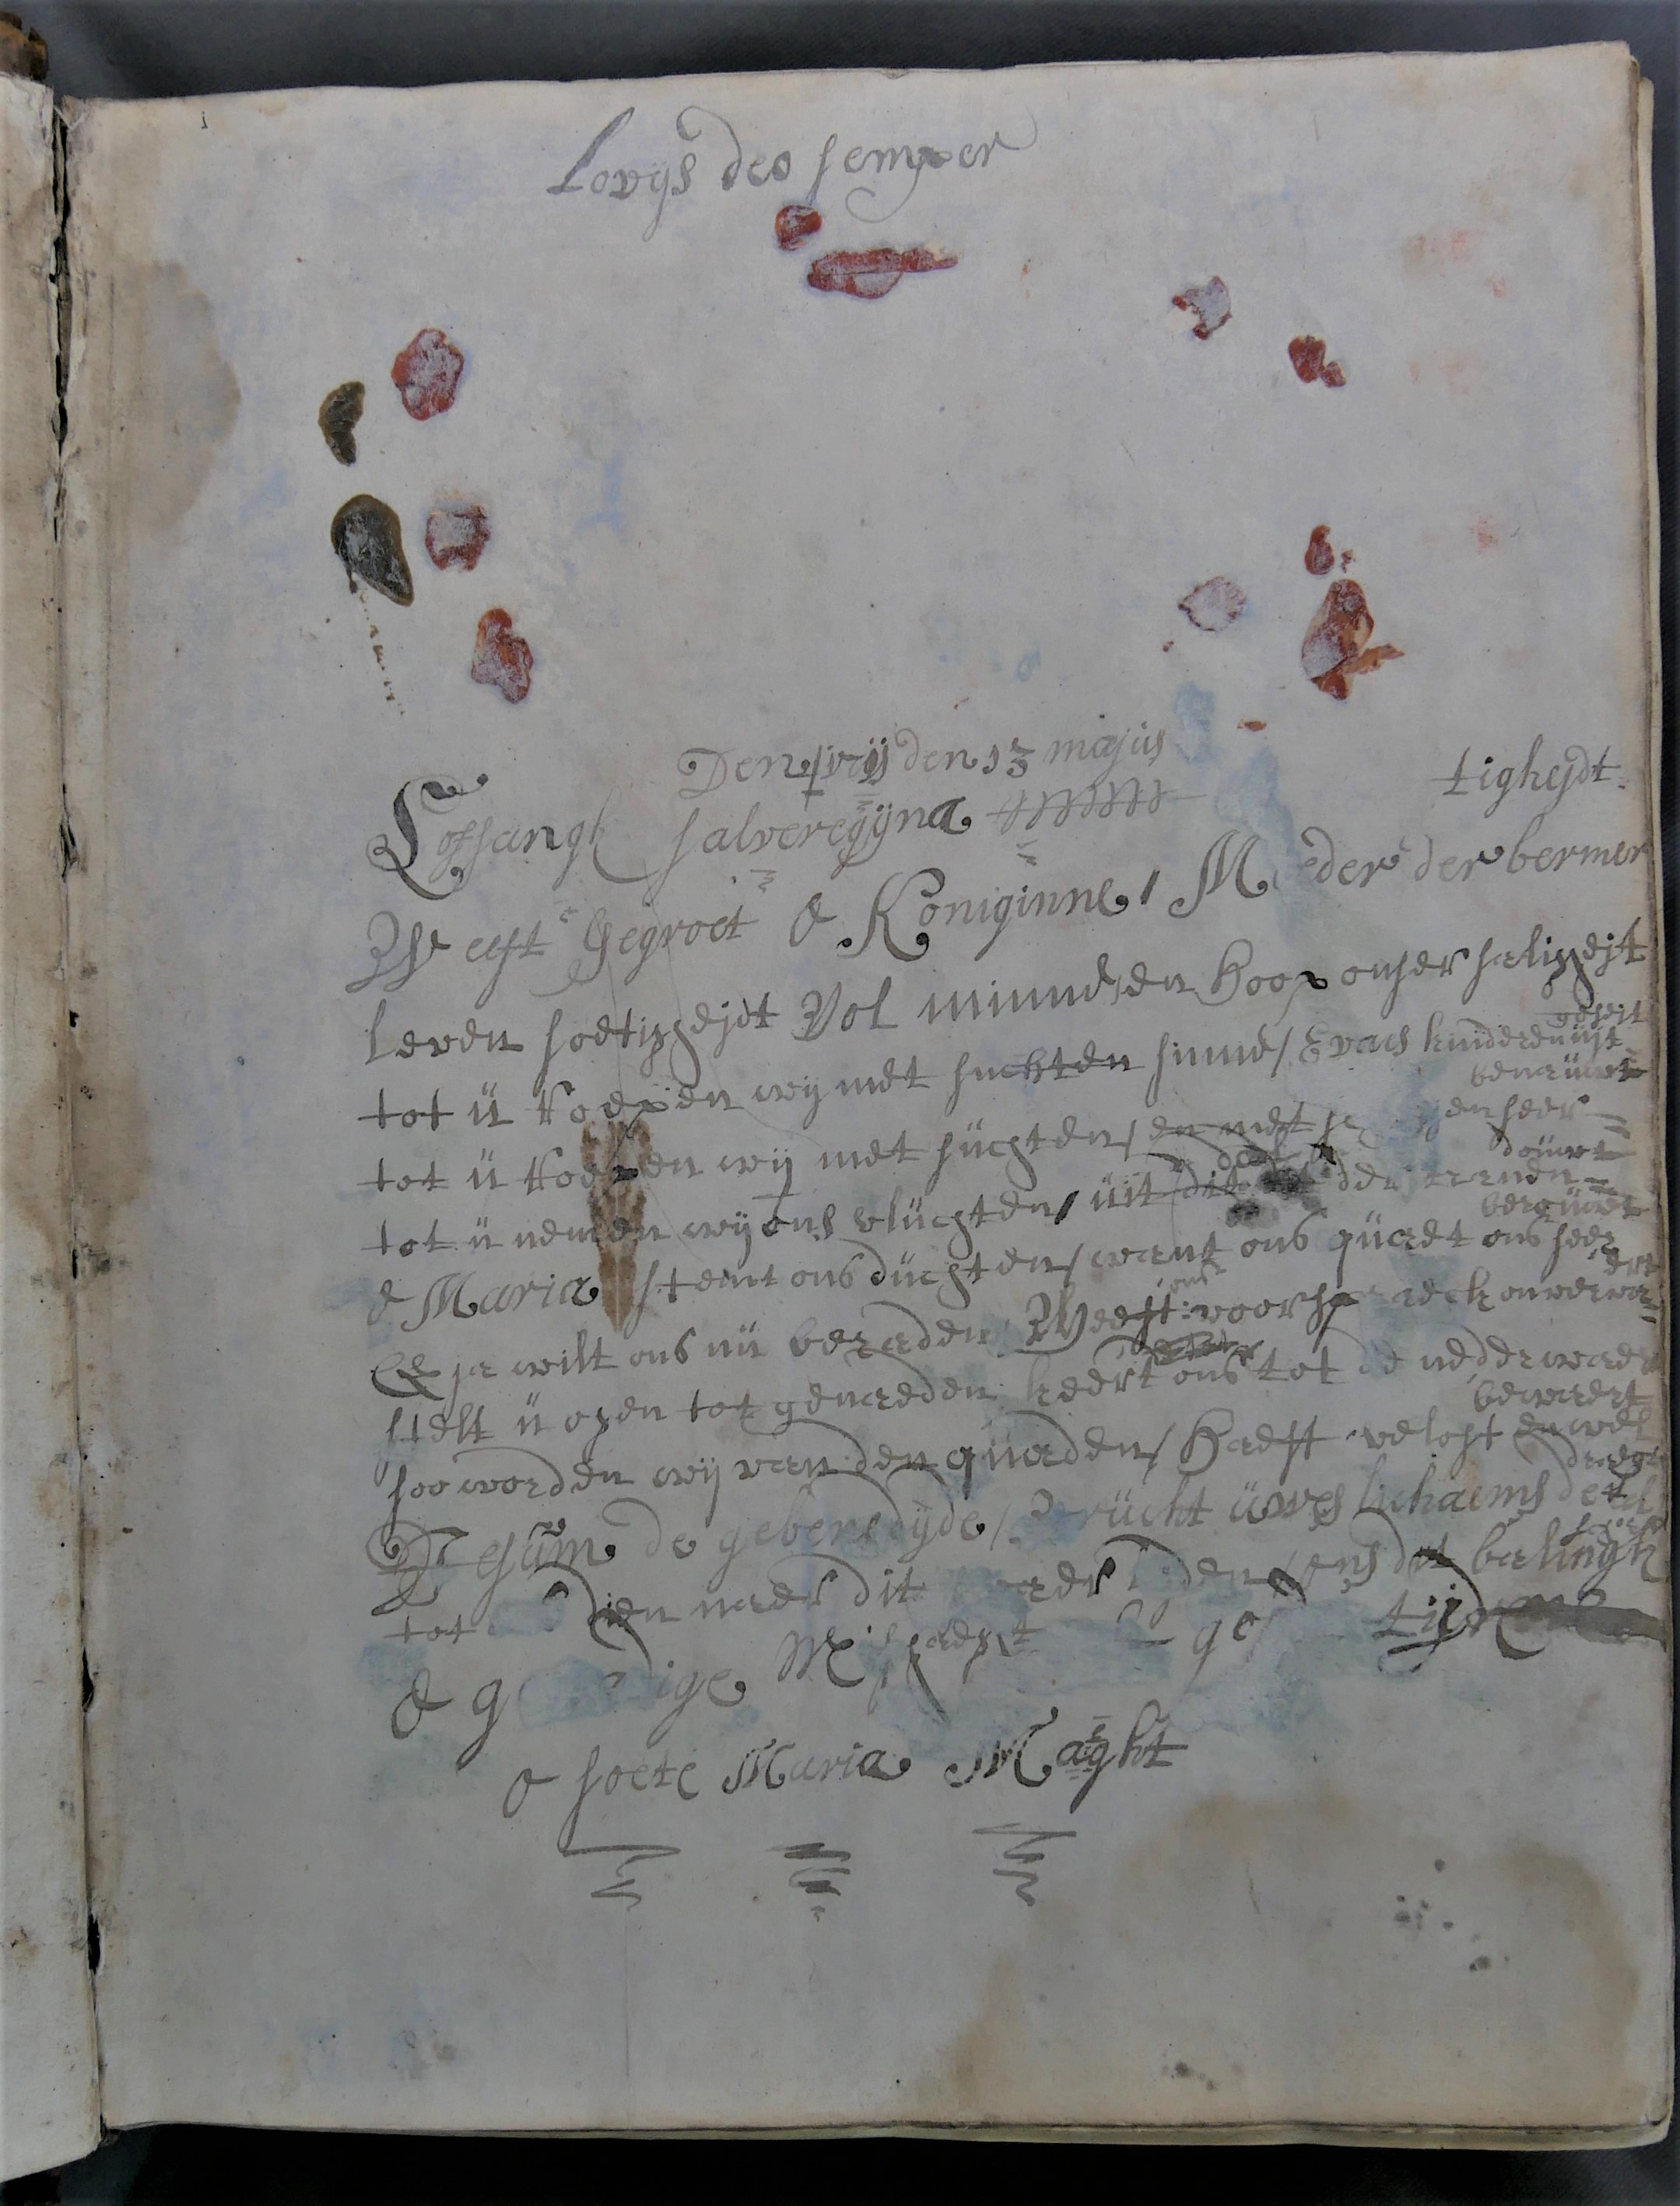 Inc. 40. Handgeschreven ‘Lofsangt salveregijna’ in Sermones de tempore et de sanctis van Bernardus van Clairvaux.